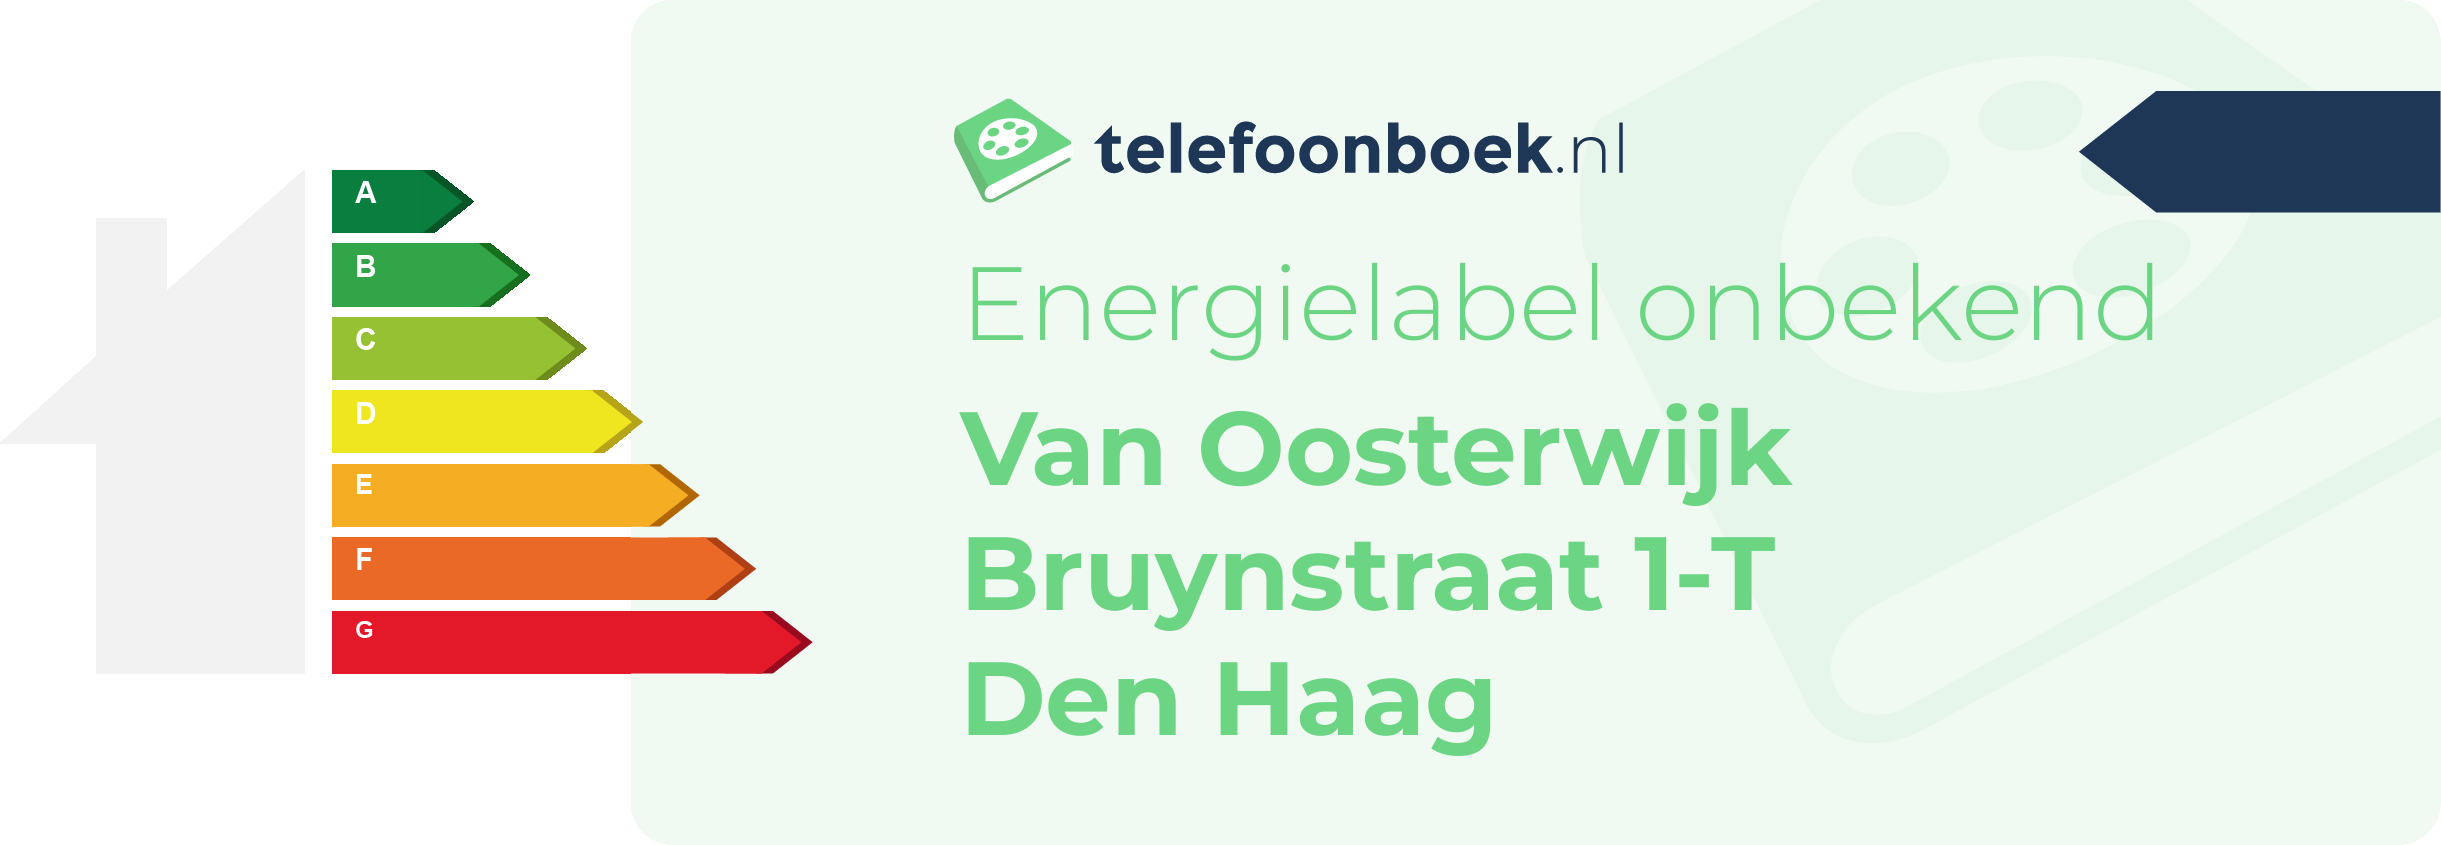 Energielabel Van Oosterwijk Bruynstraat 1-T Den Haag